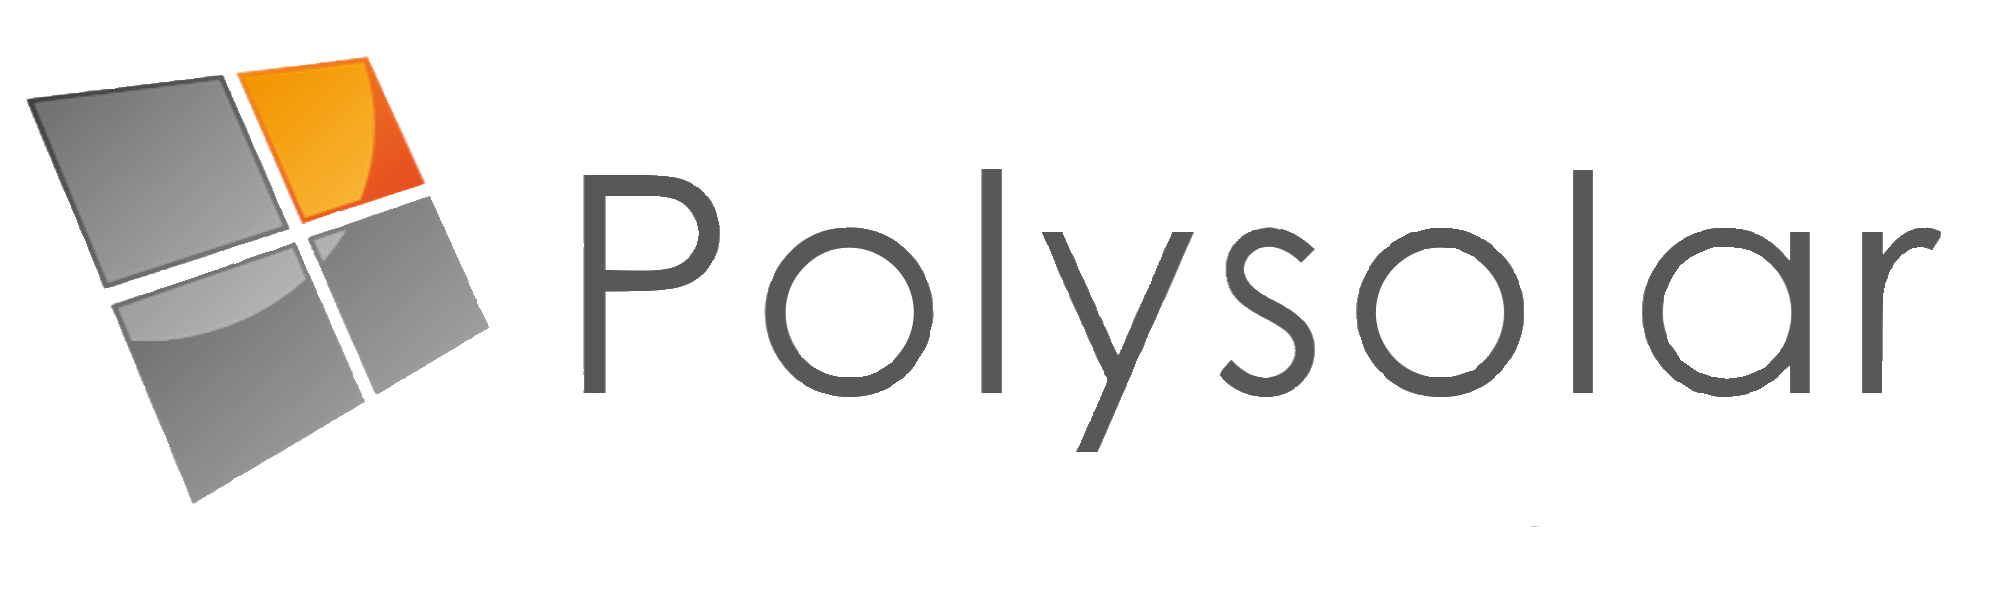 Polysolar Ltd